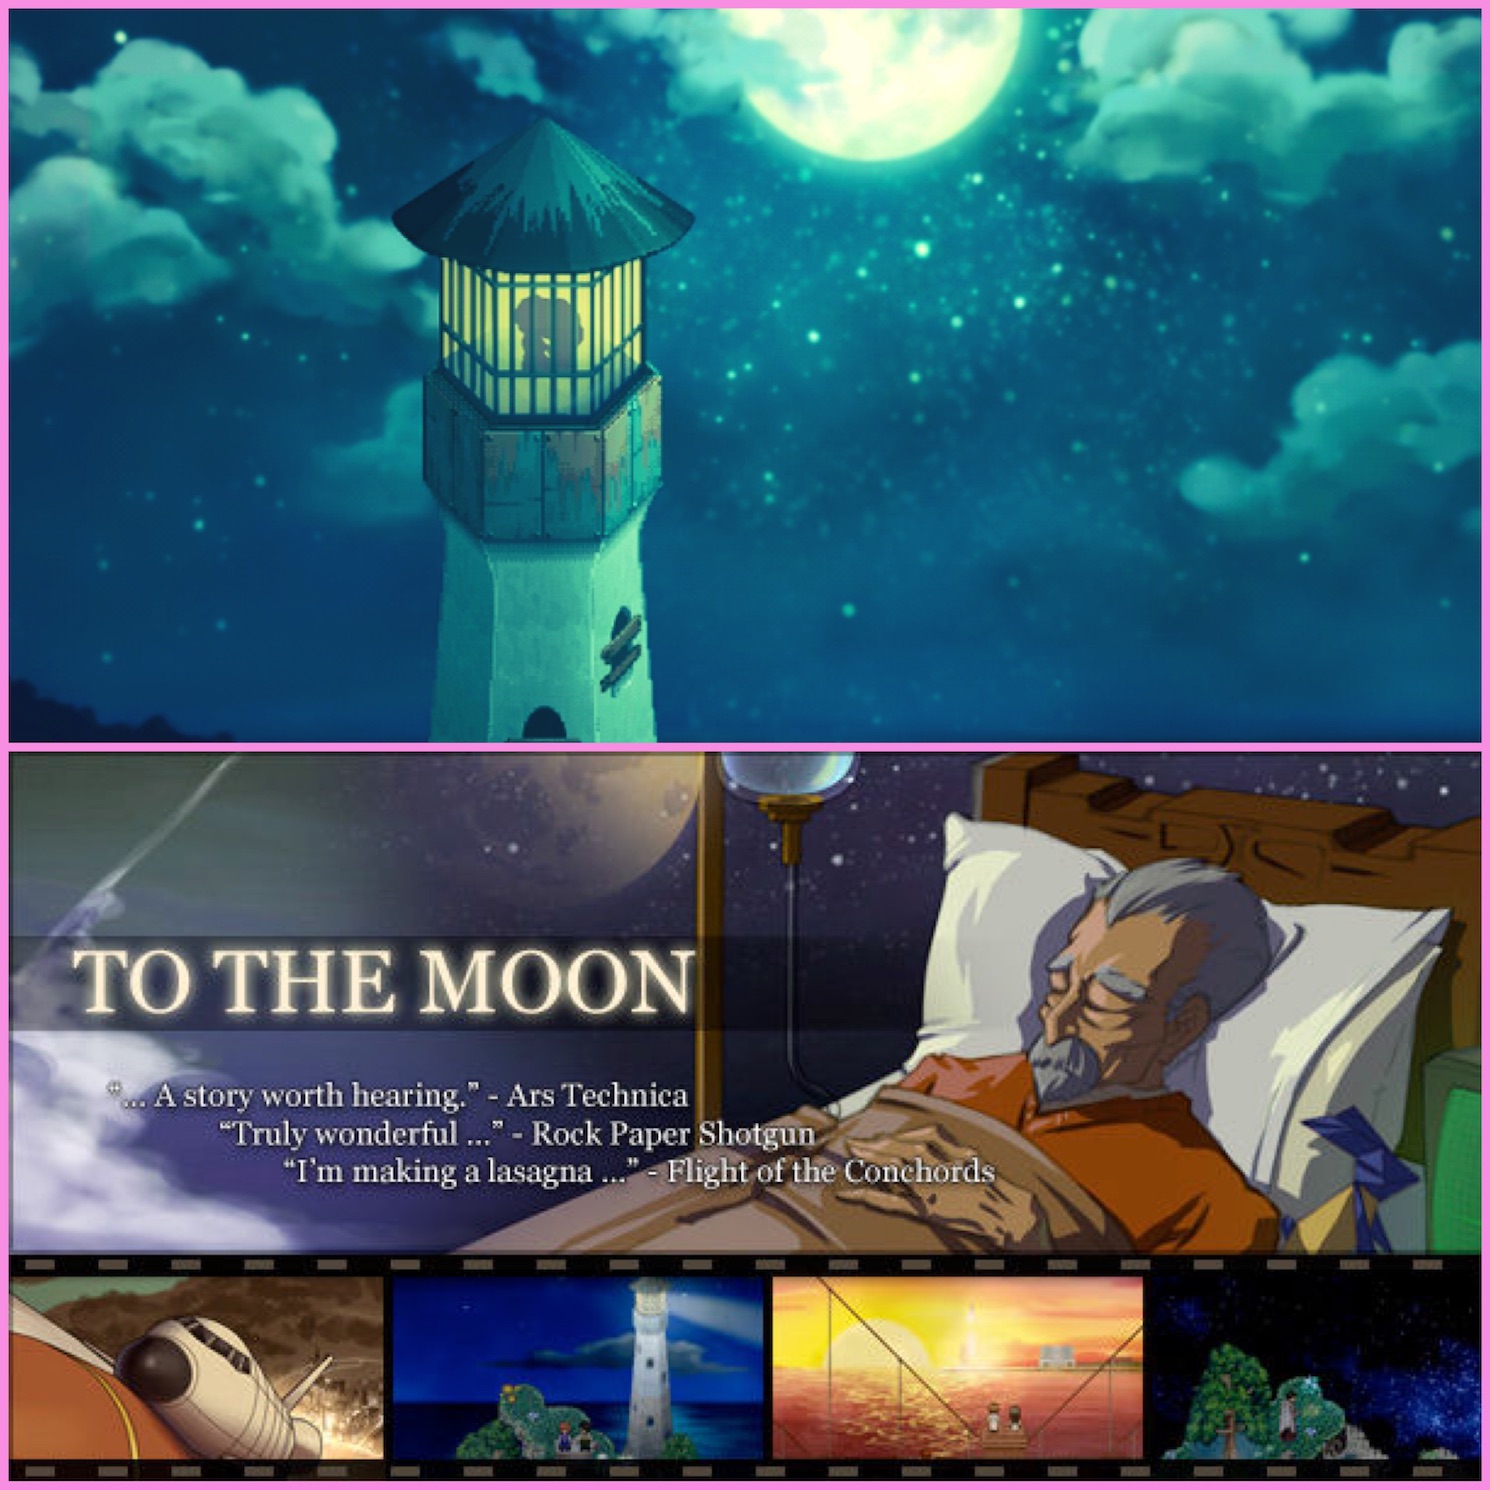 to-the-moon-video-game-videogioco-considerazioni-riflessioni-ottava-arte-insta-thoughts-gaming